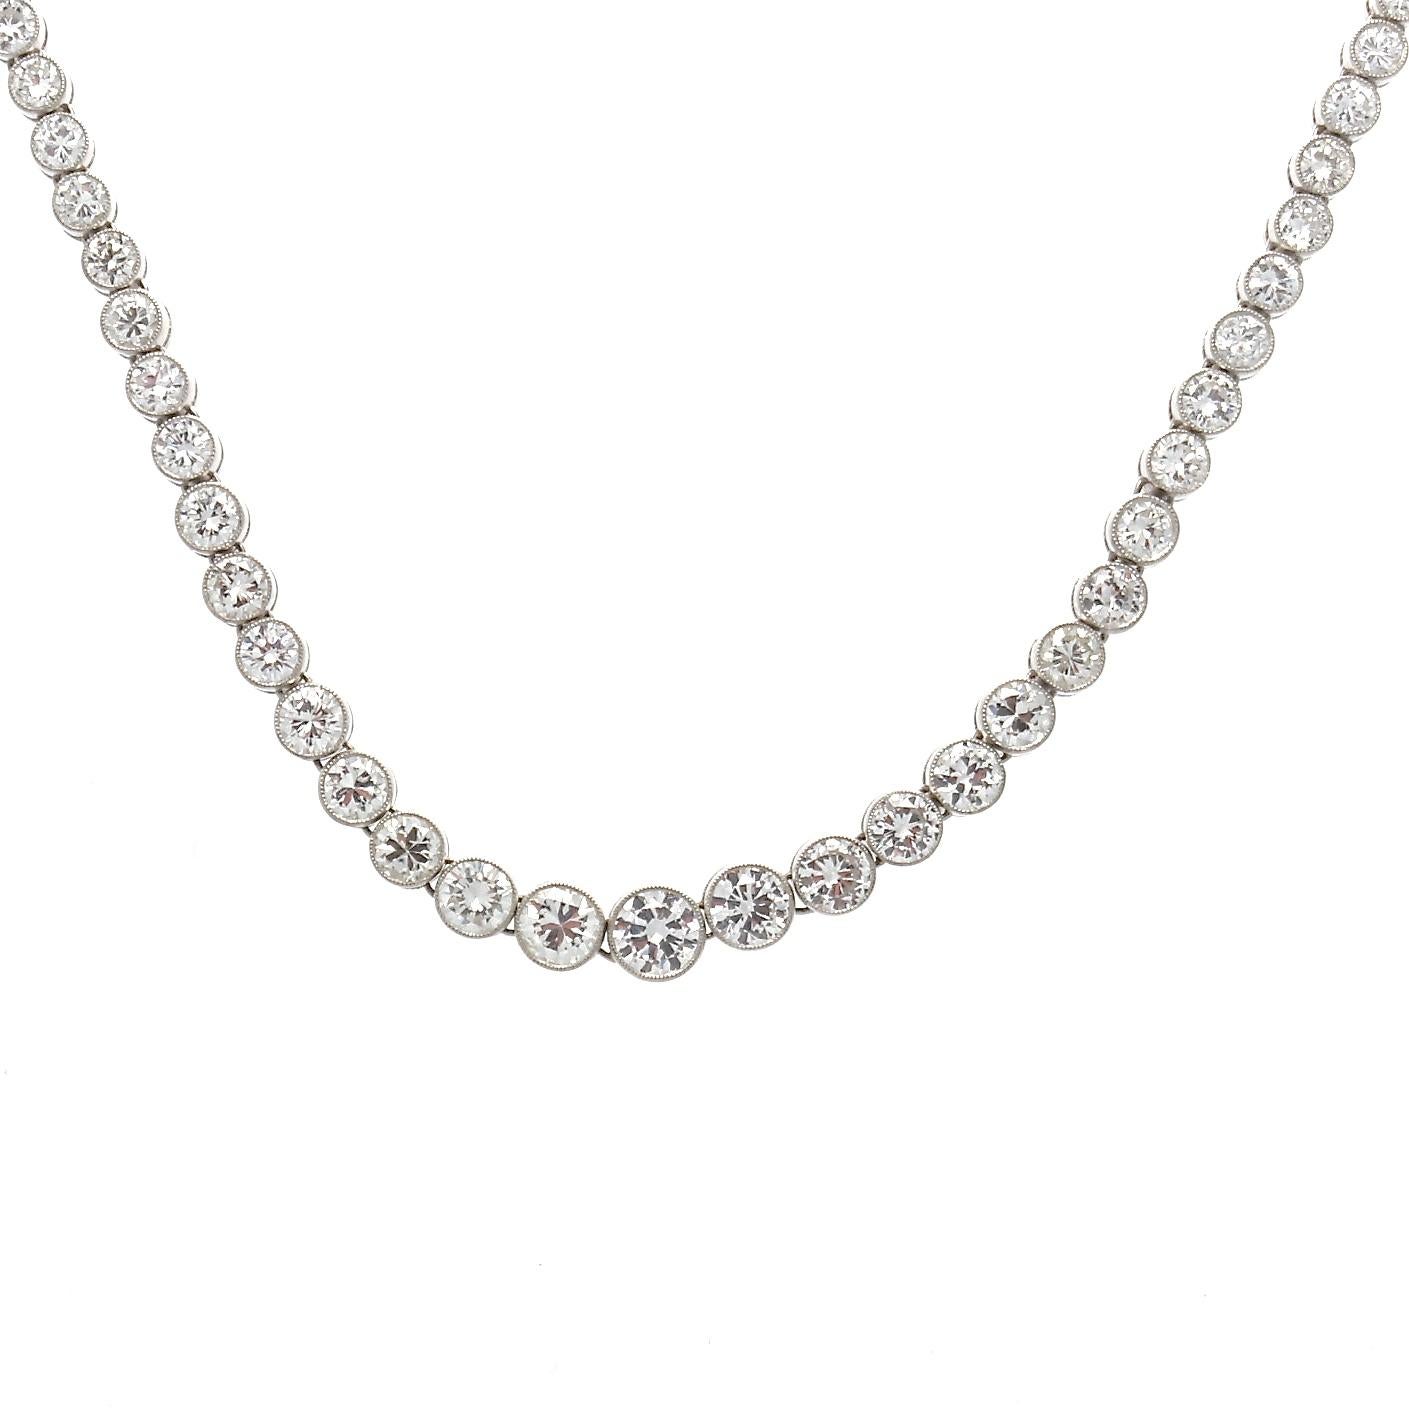 13 carat diamond necklace